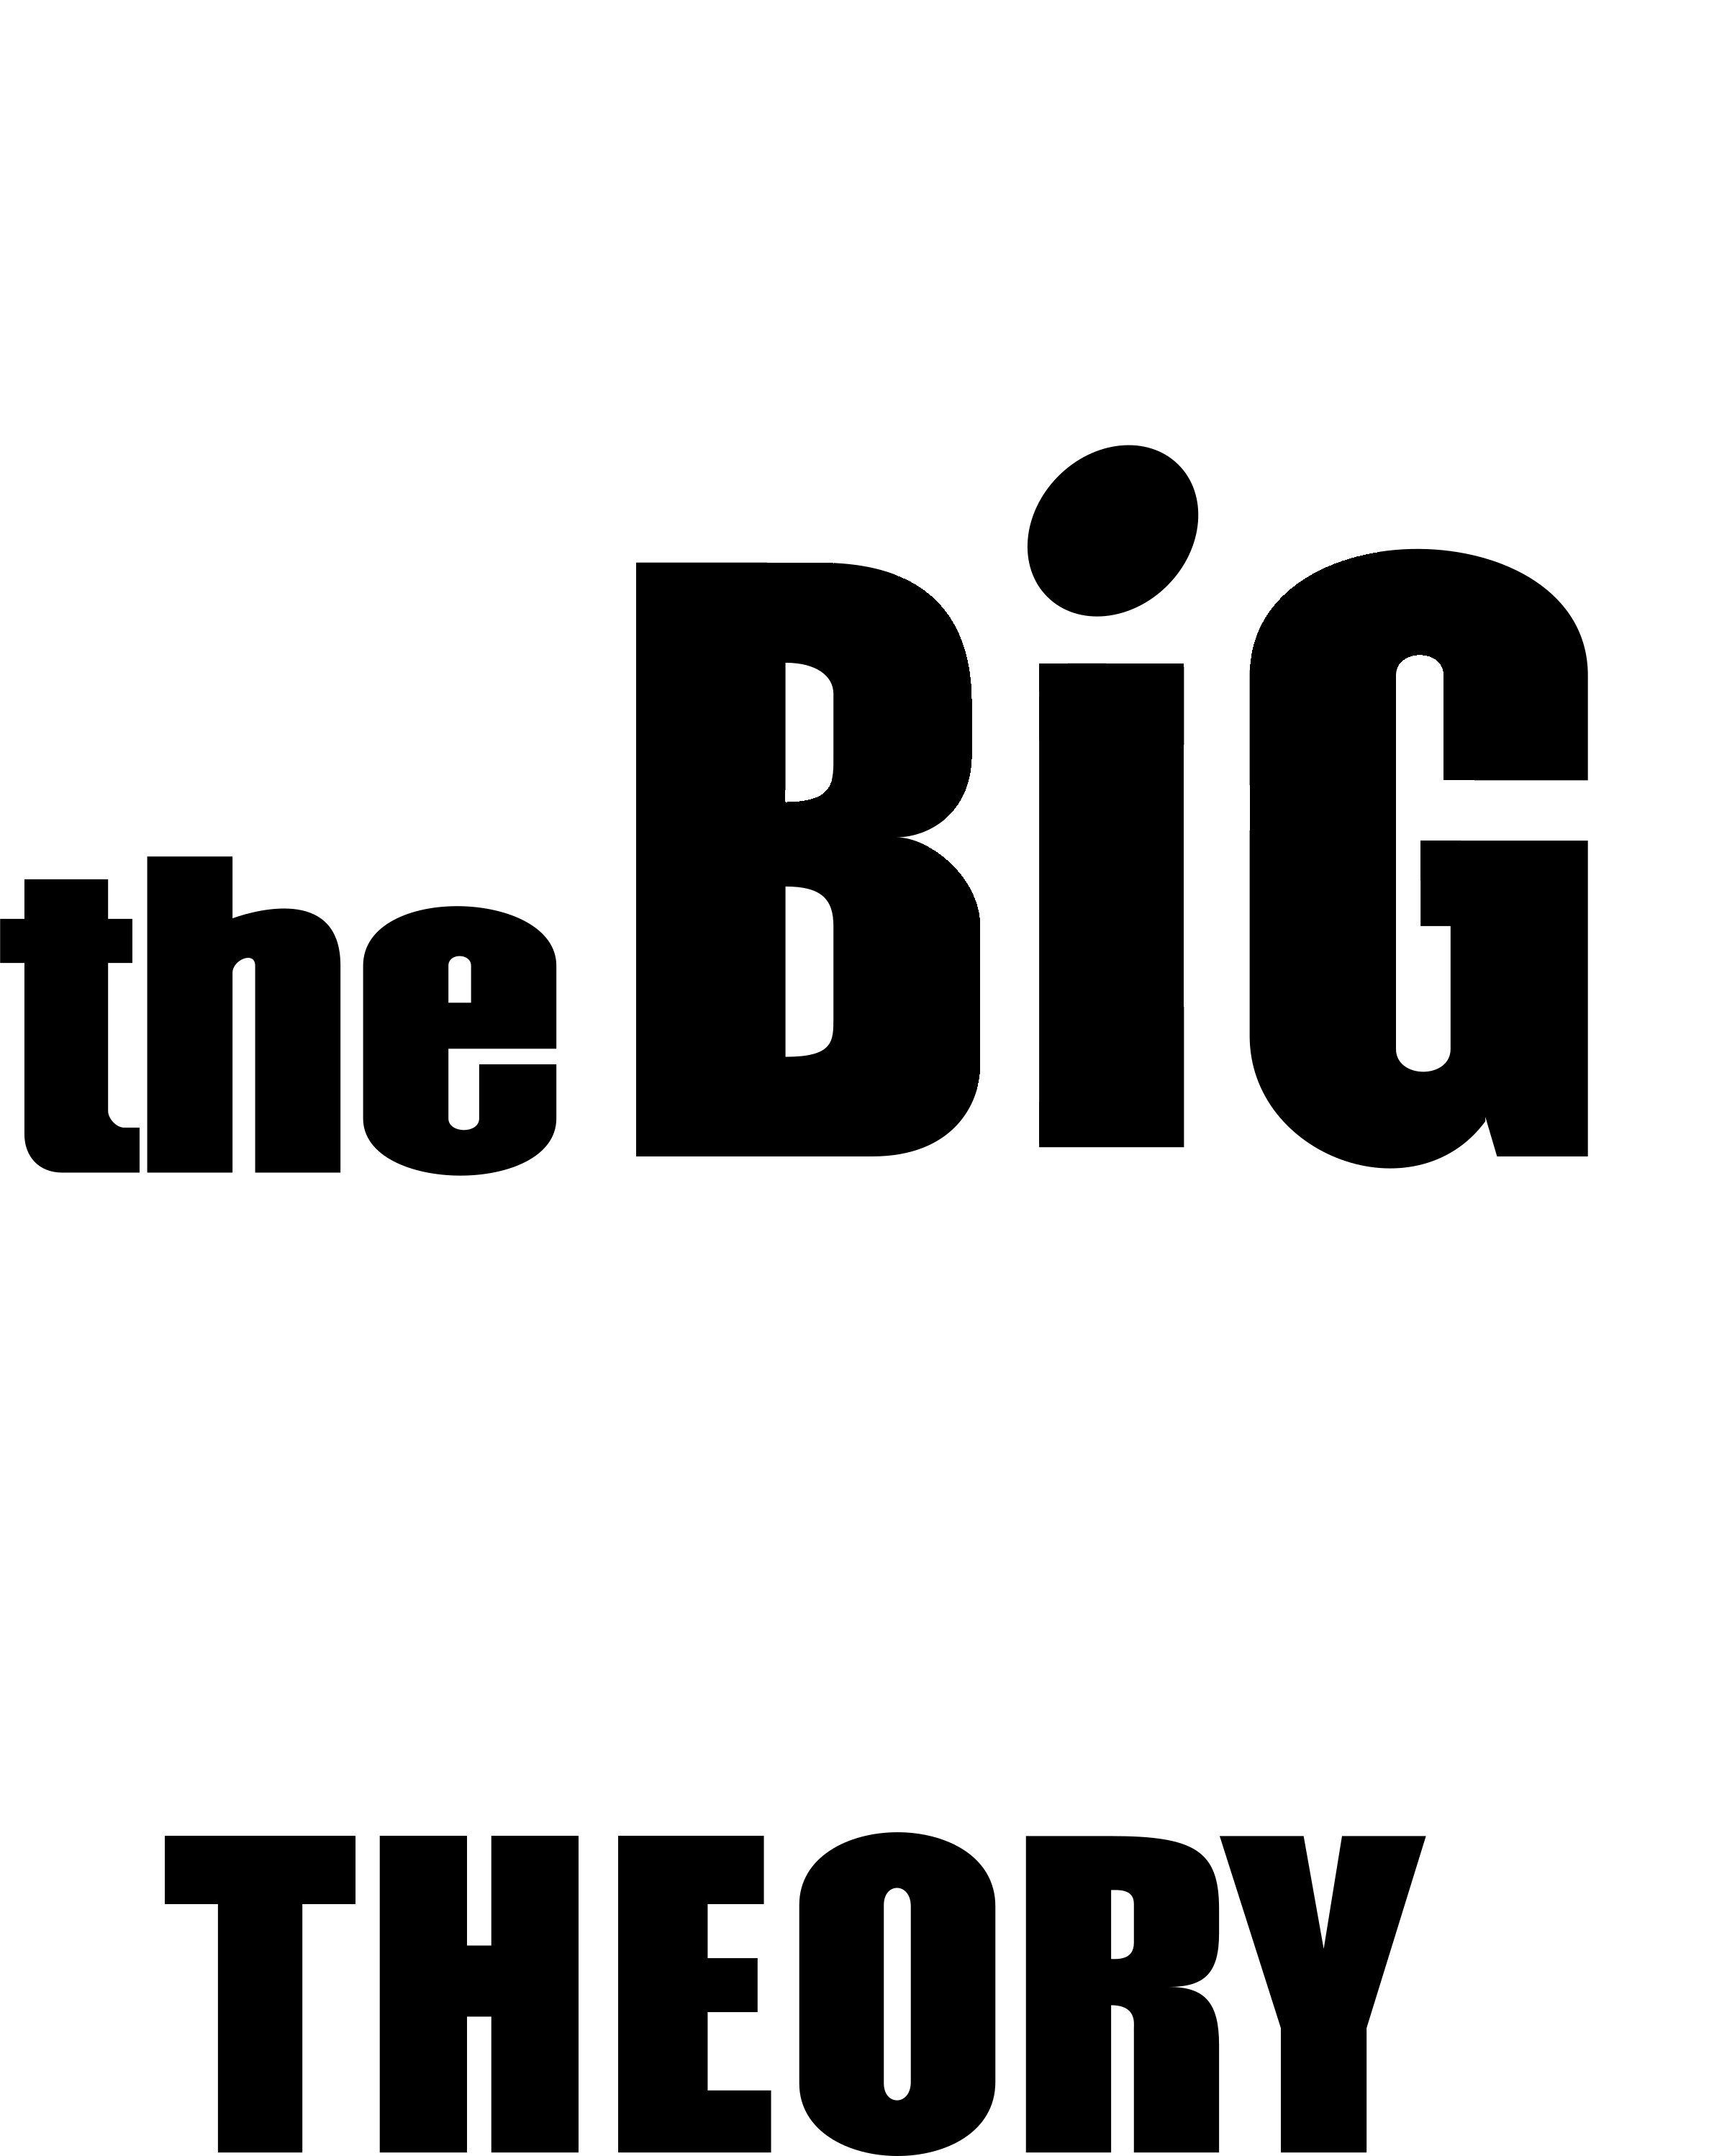 The Big Bang Theory Logo PNG Free Download